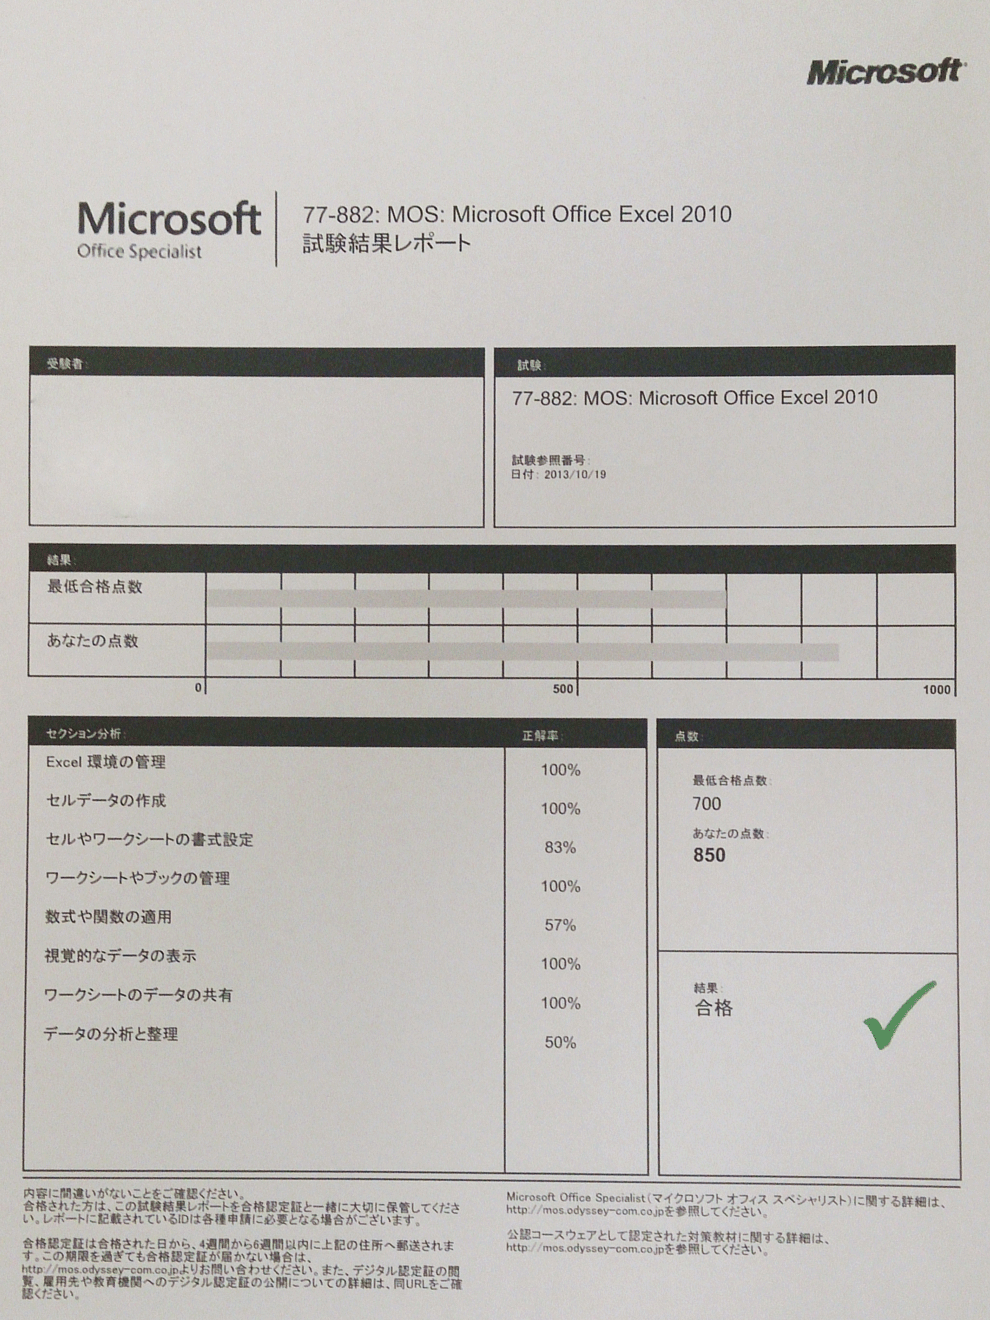 マイクロソフトオフィススペシャリストExcel合格結果レポート